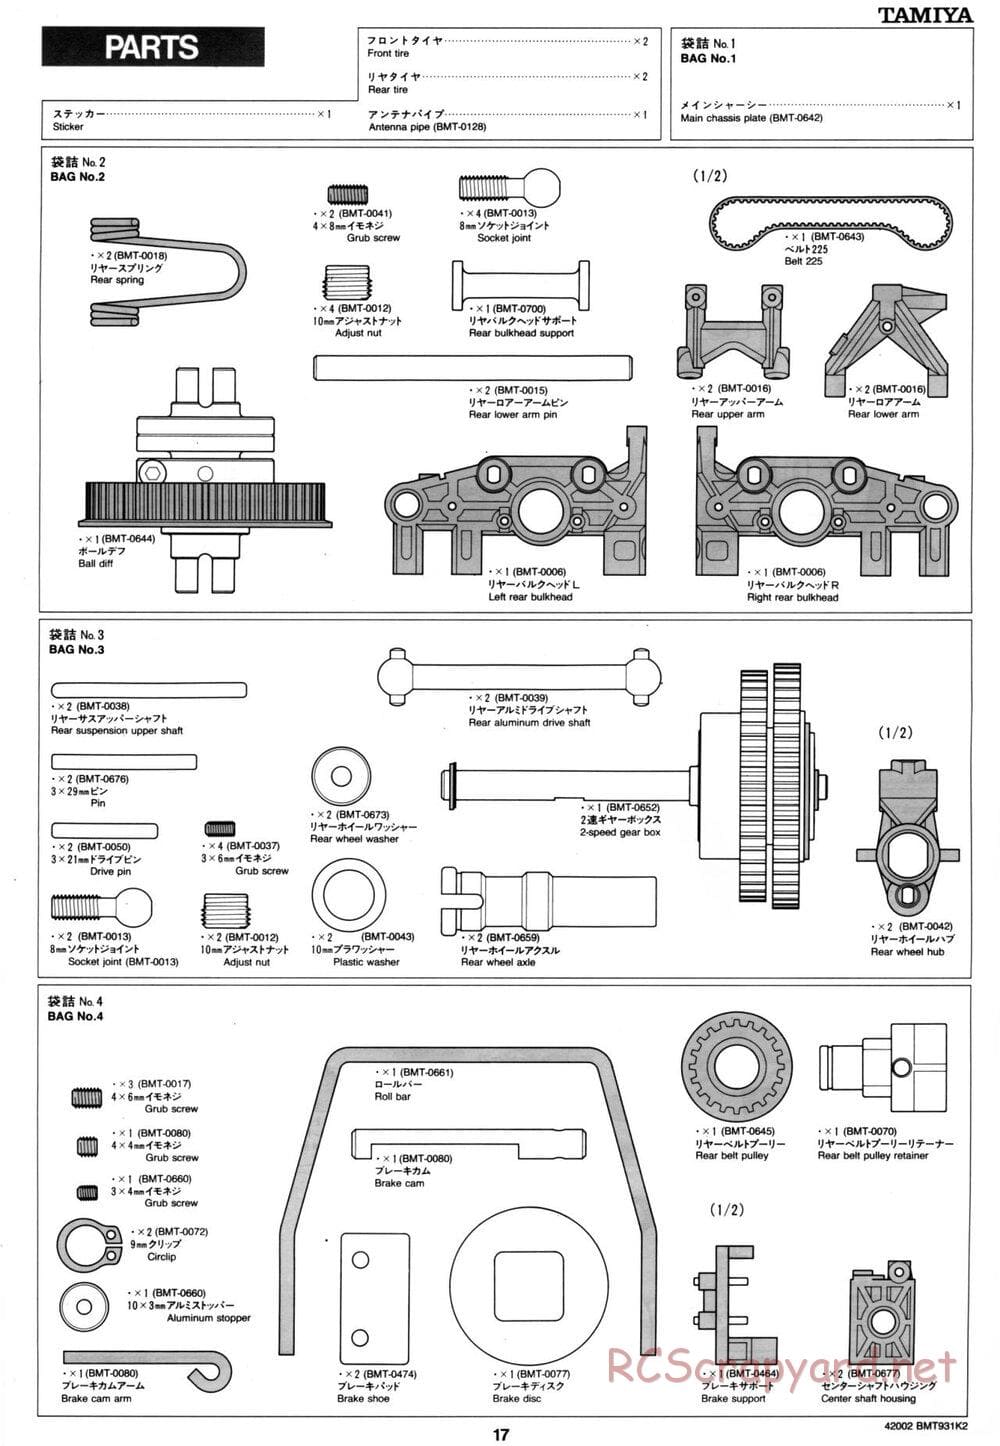 Tamiya - BMT 931 K2 Racing Chassis - Manual - Page 17